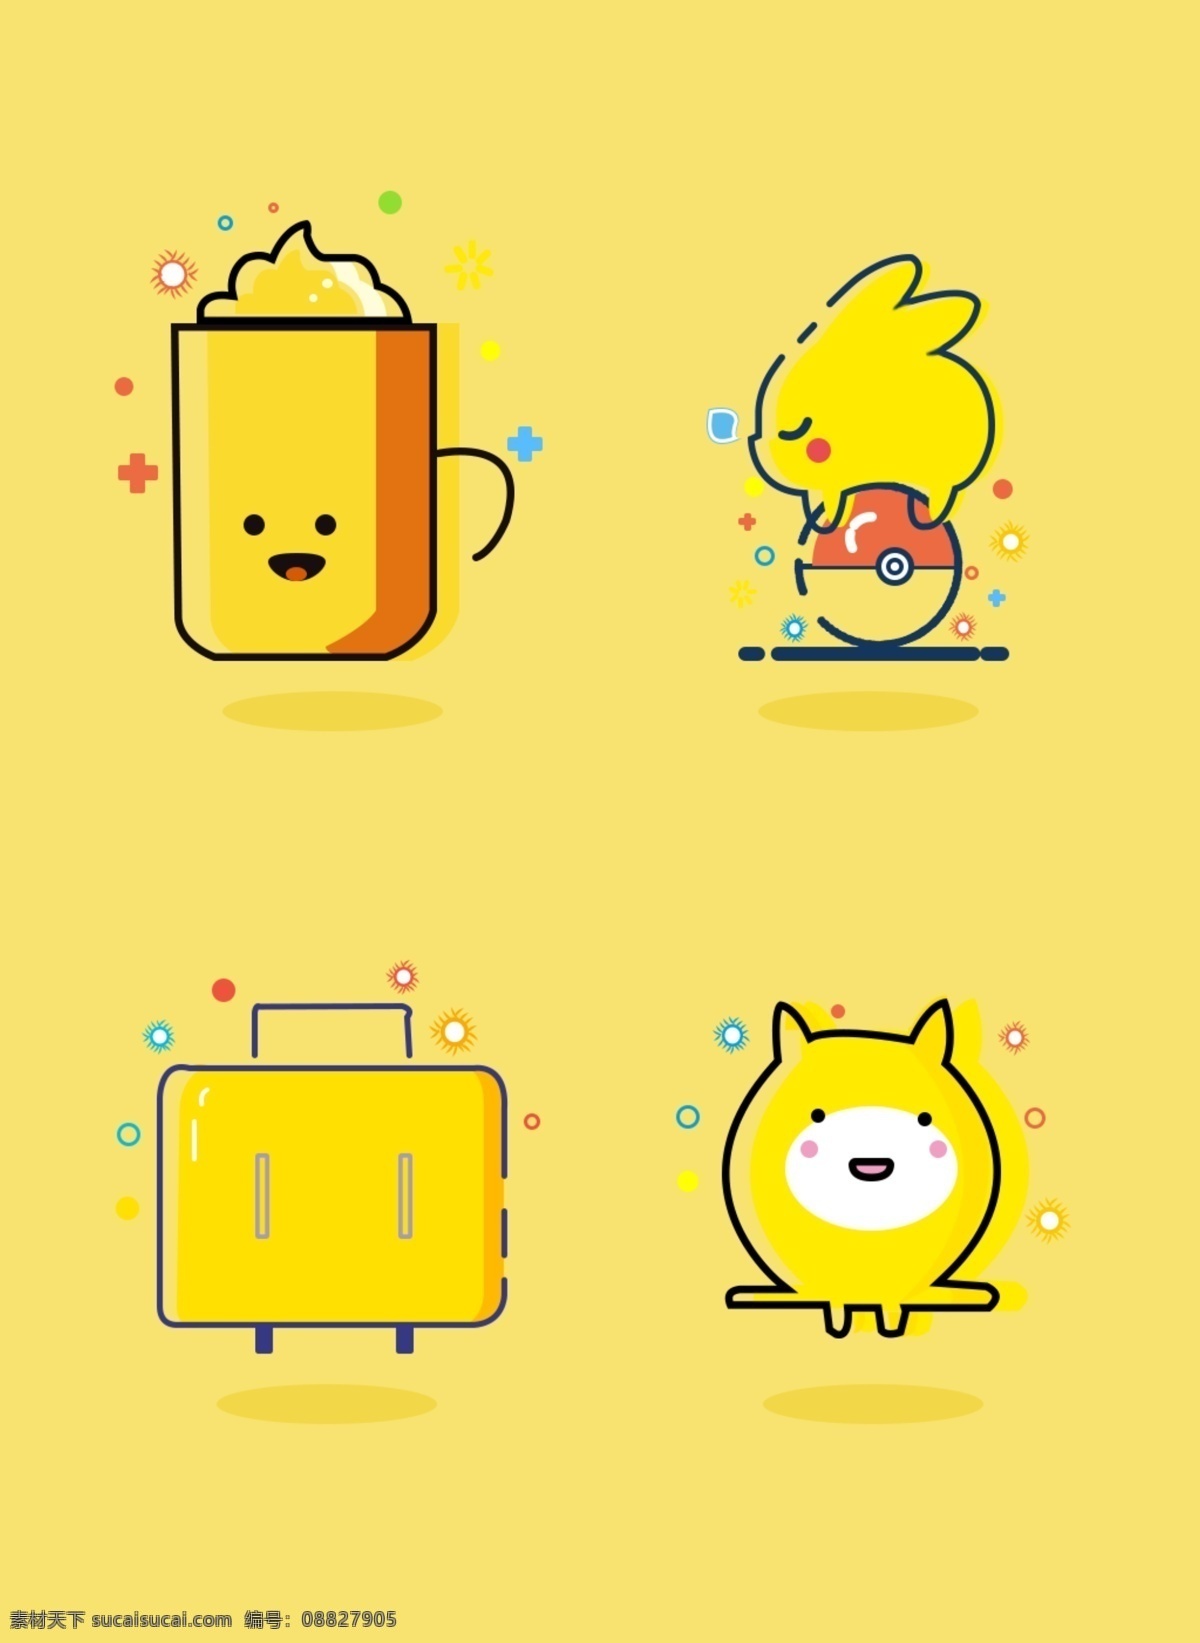 可爱 卡通 mbe 风格 简约 有趣 小 图标 黄色 杯子 咖啡 行李箱 风图标 皮卡丘